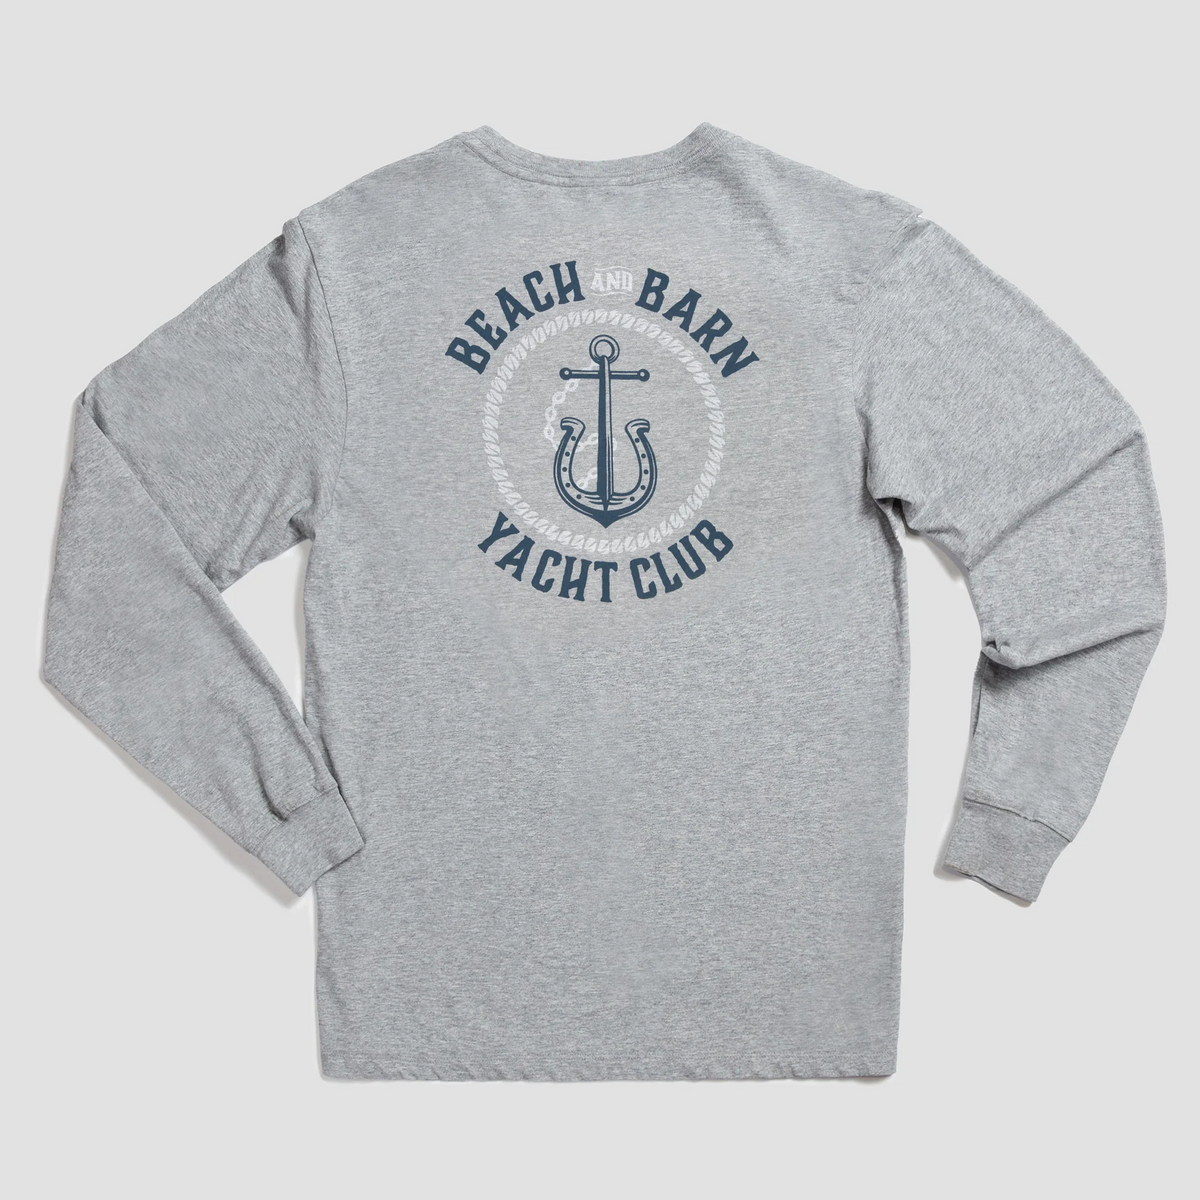 Anchors A-Neigh Long Sleeve Tee Shirt